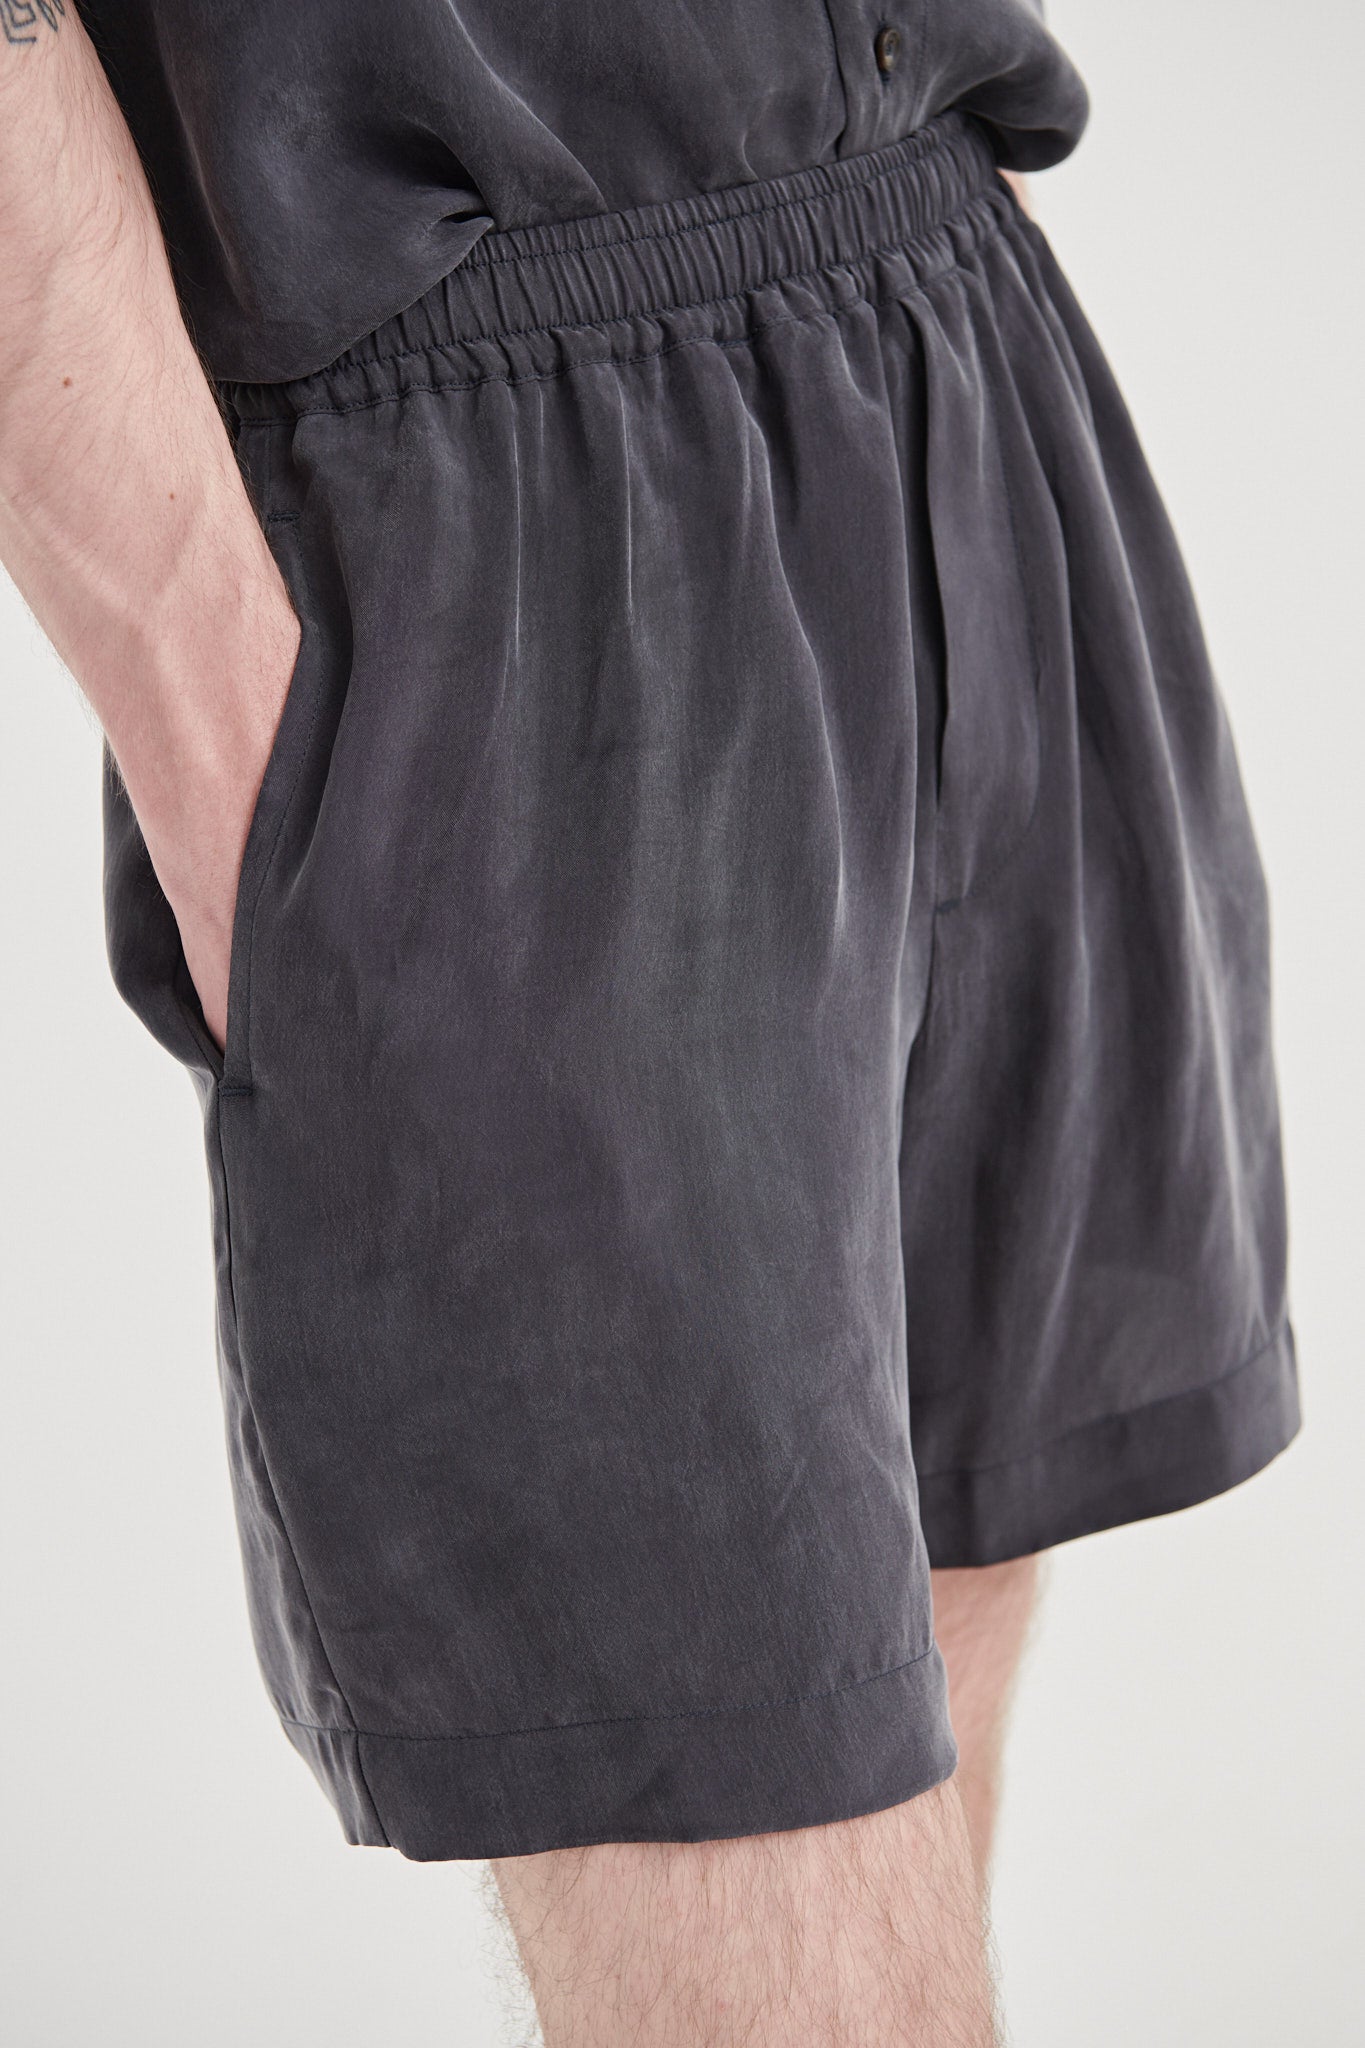 07 / Vegan silk Shorts